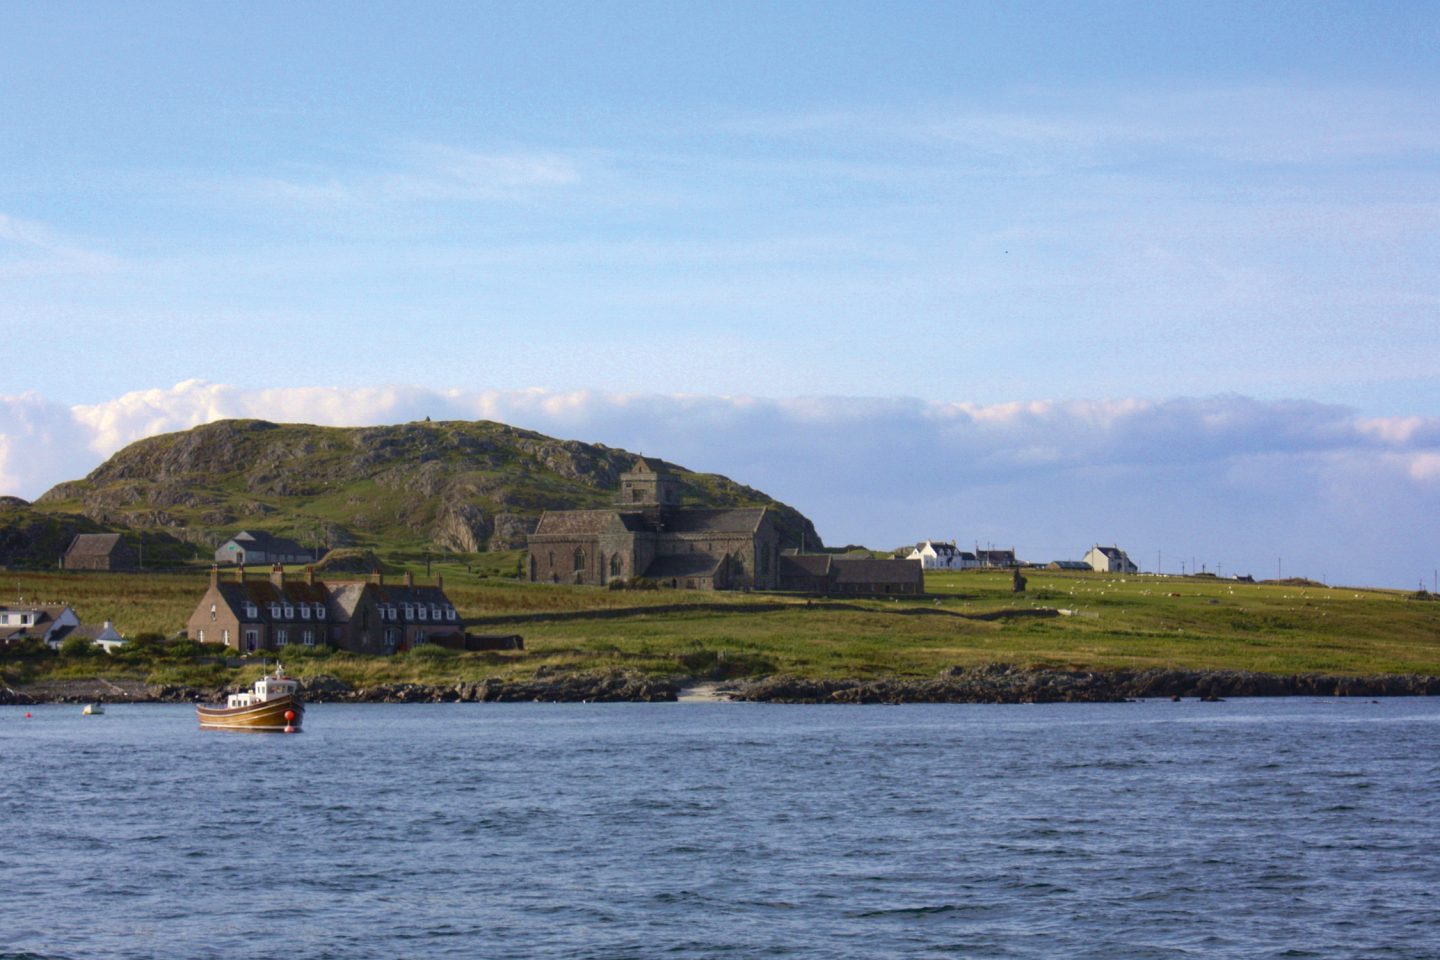 Iona abbey on Iona island